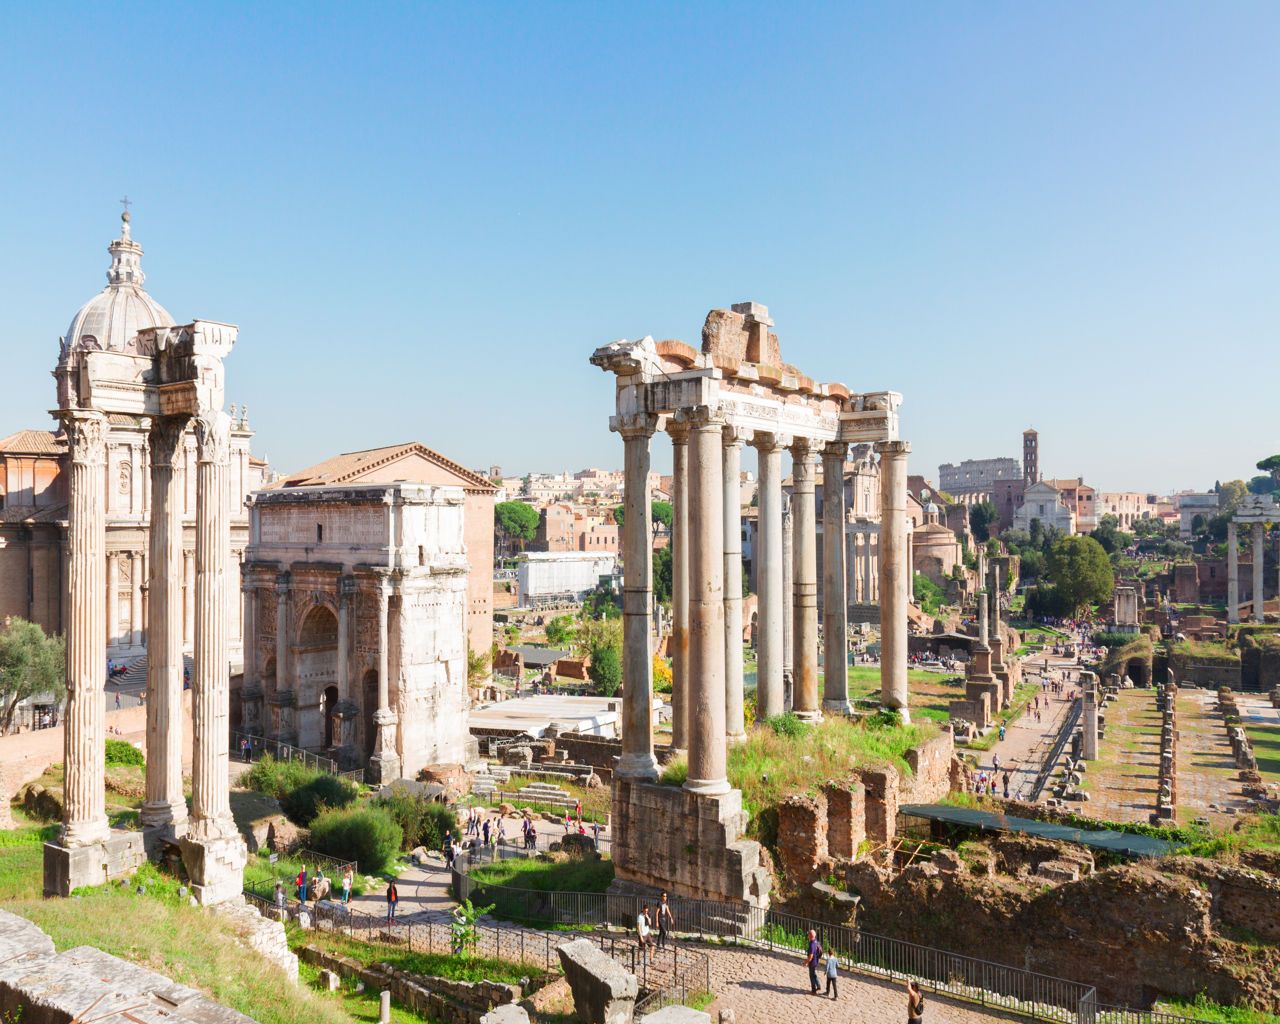 Nova godina Rim, Pompeji i Vatikanski muzeji